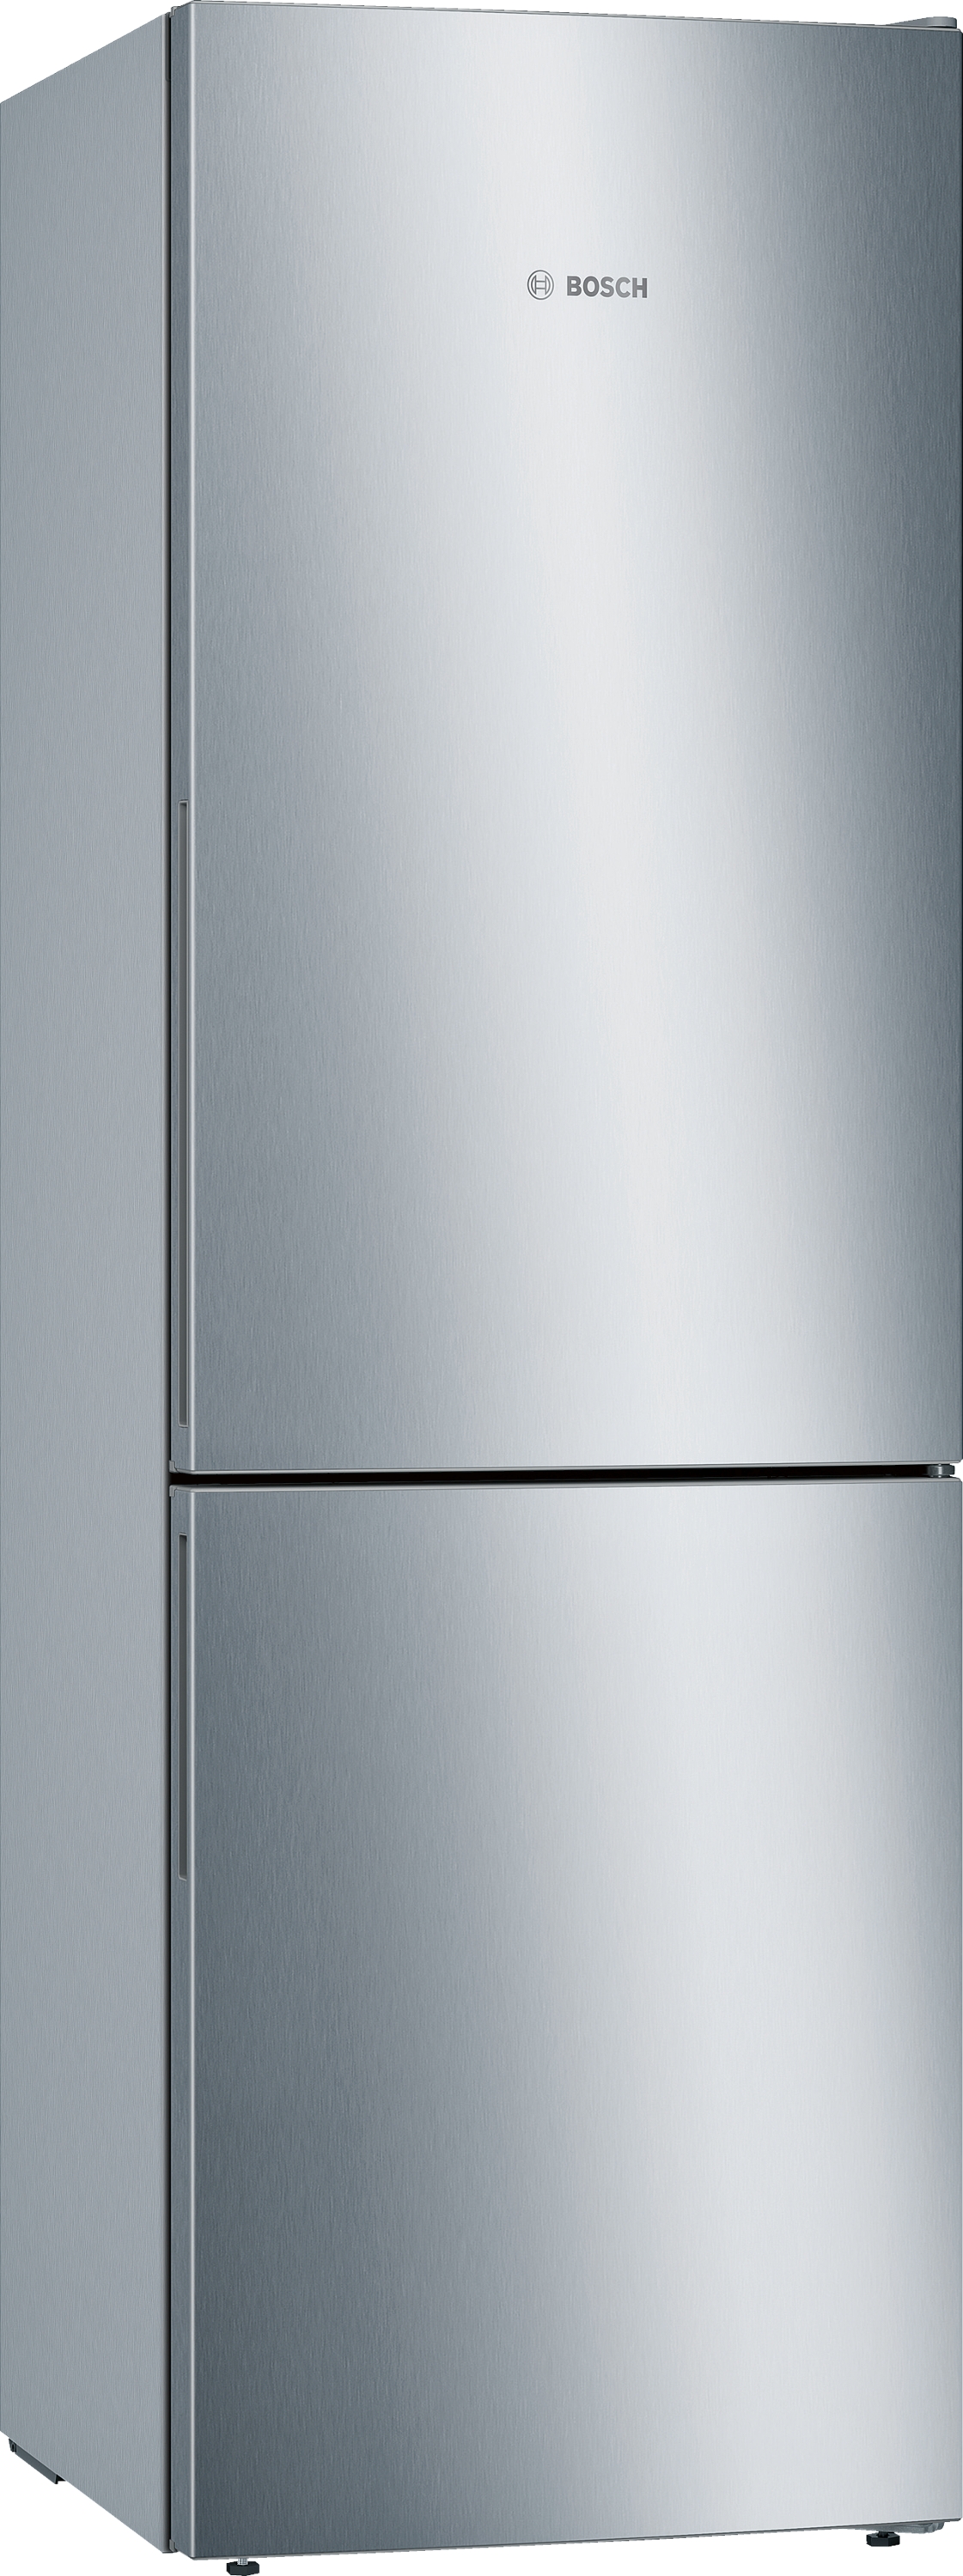 KGE36ALCA, Samostojeći frižider sa zamrzivačem dole